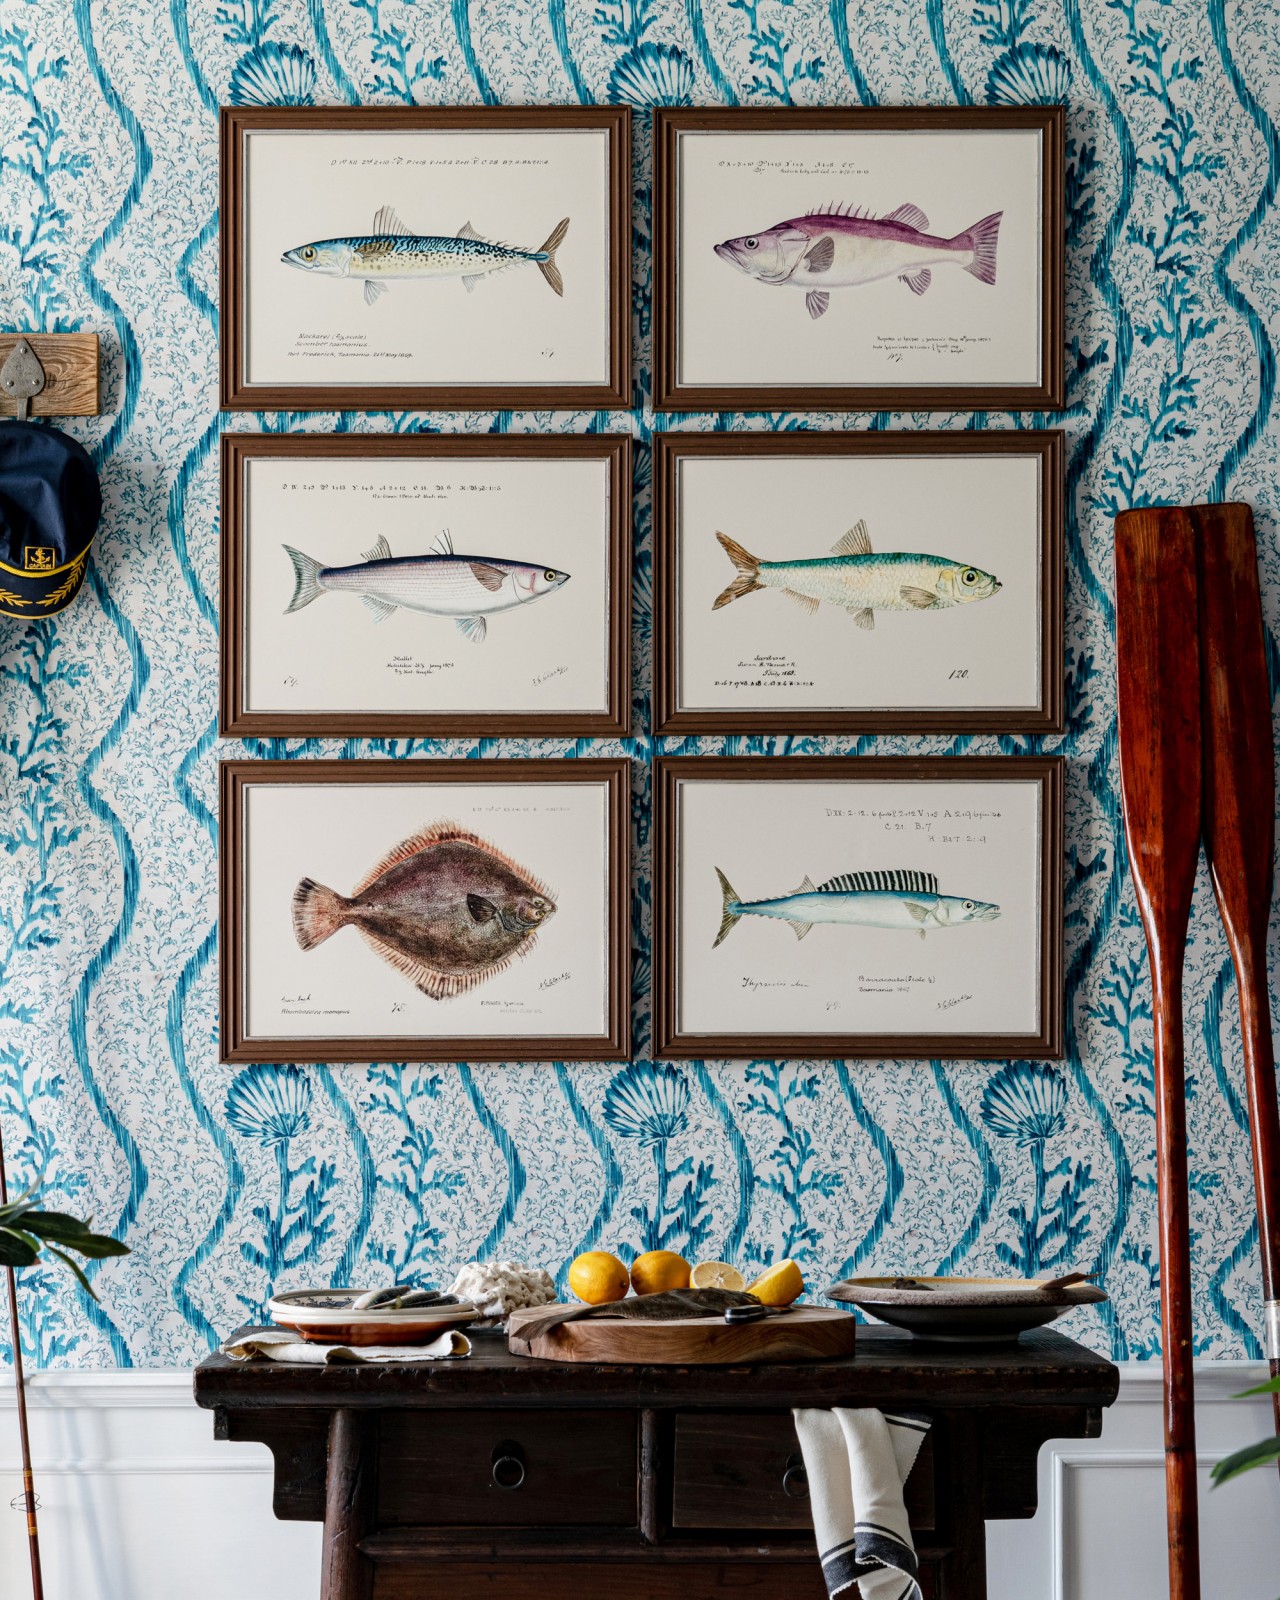 MEDITERRANEAN FISH - BLUE MACKEREL by F Clark Framed Art